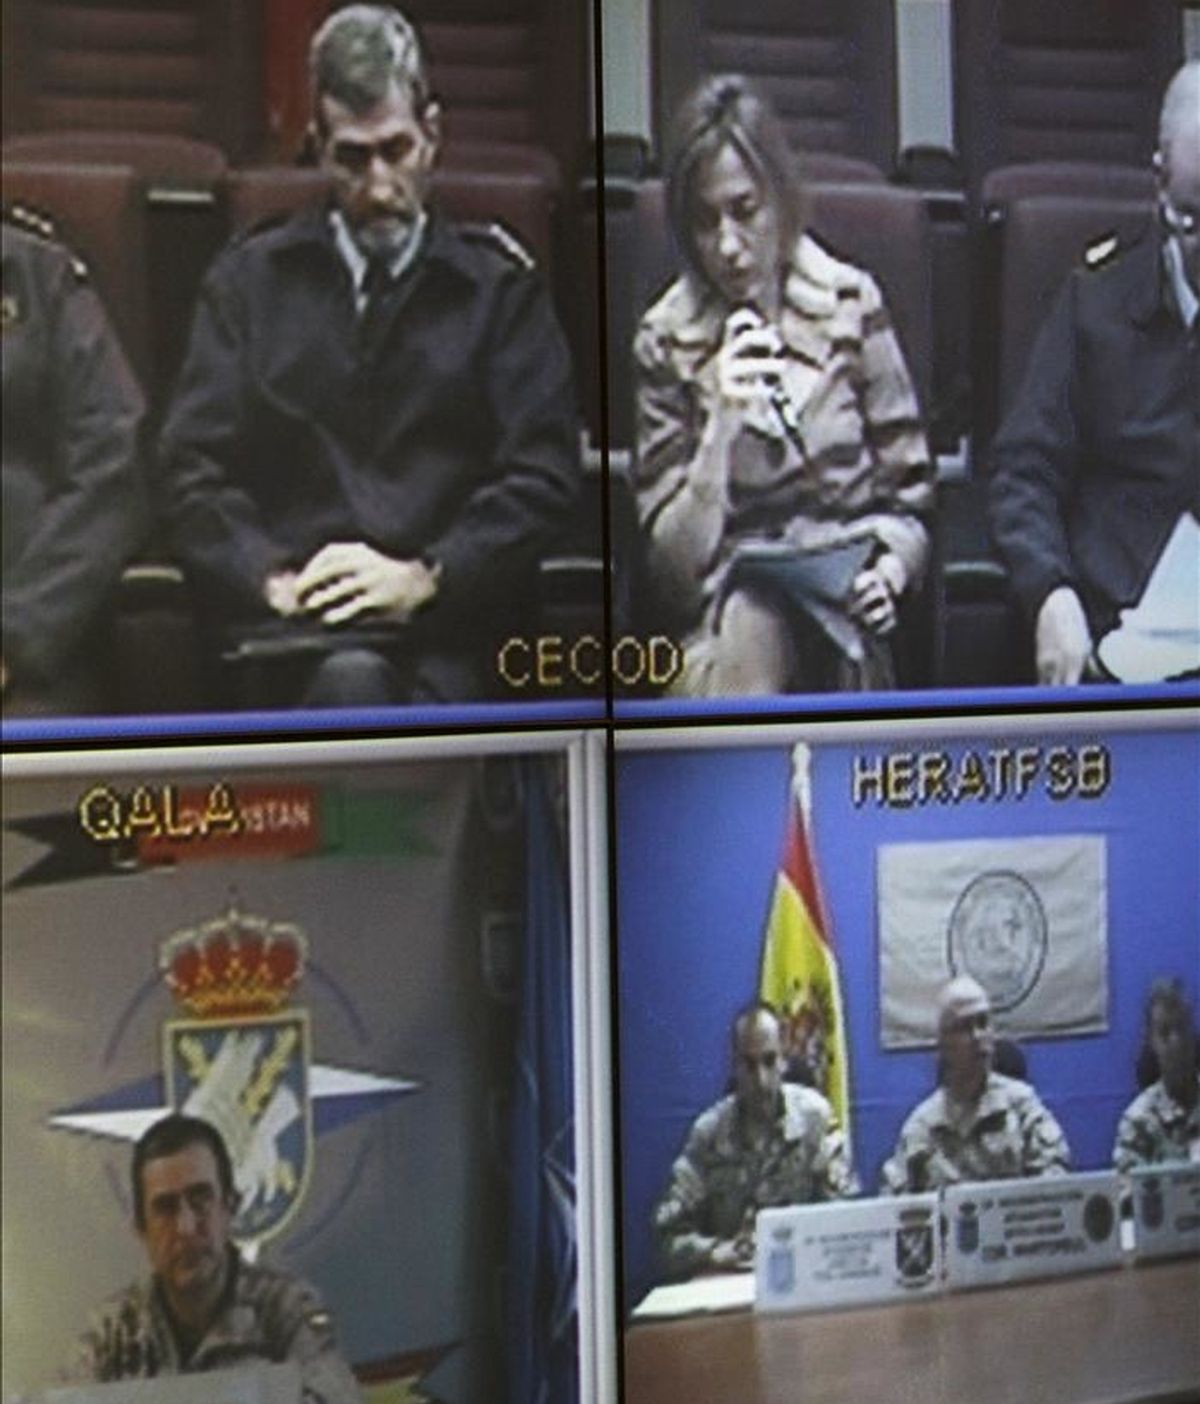 Imagen tomada de la pantalla, durante la videoconferencia que la ministra de Defensa, Carme Chacón (d), junto al jefe del Estado Mayor de la Defensa (JEMAD), el general José Julio Rodríguez (i), mantuvo hoy desde la sede de su departamento con las tropas españolas desplegadas en Afganistán. En la parte inferior de la imagen, la base del Equipo de Reconstrucción Provincial (PRT) de Qala i Naw (i) y la Base de Apoyo Avanzada (FSB) de Herat (d), ambas en Afganistán. EFE